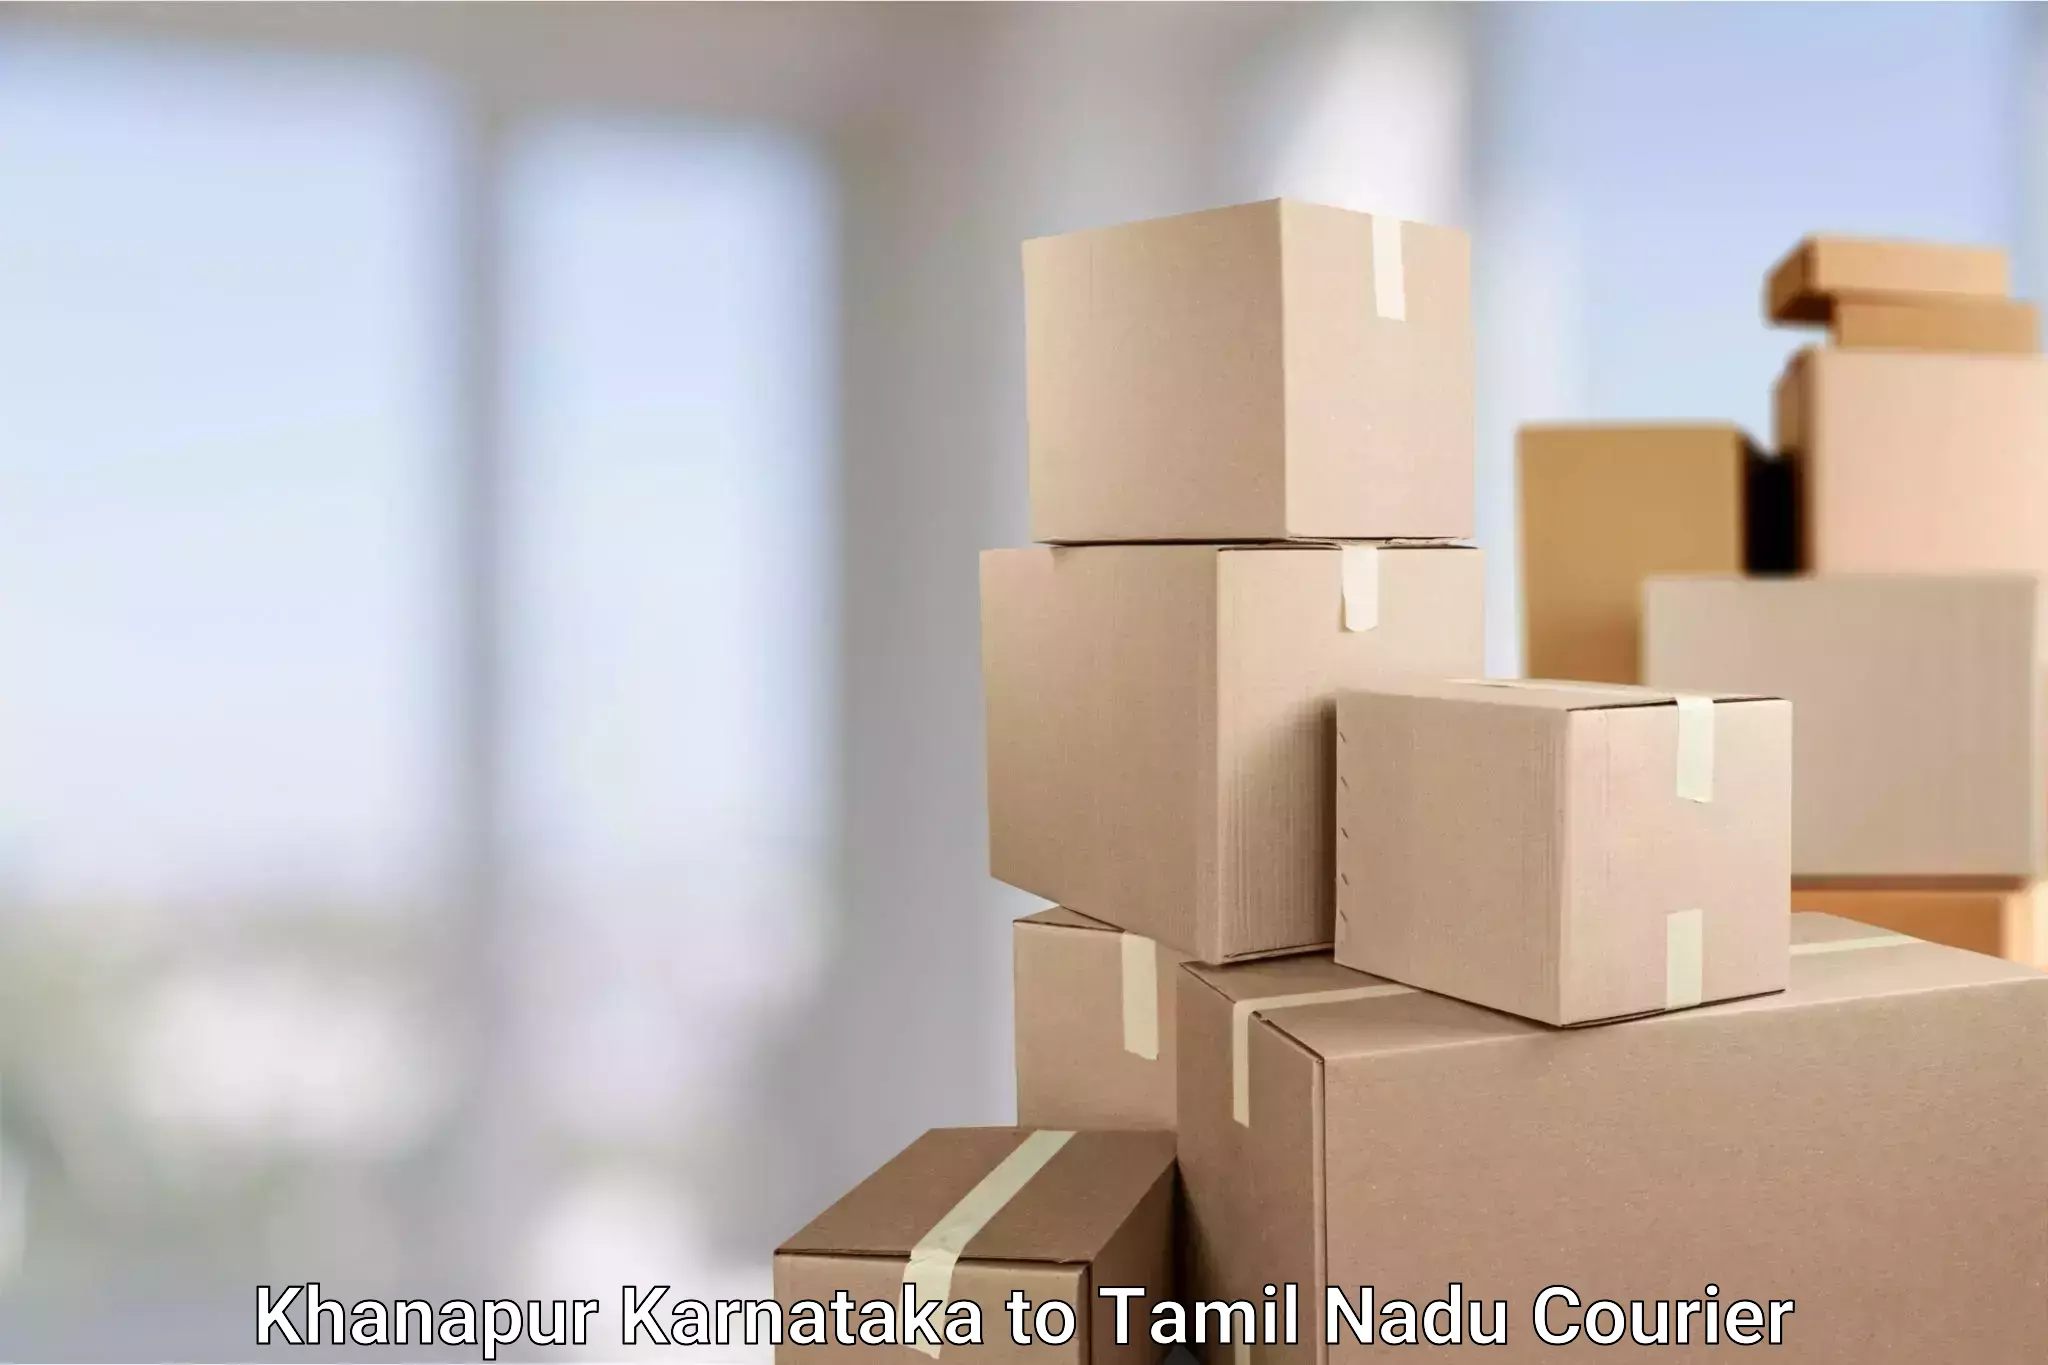 Door-to-door shipment Khanapur Karnataka to Tamil Nadu